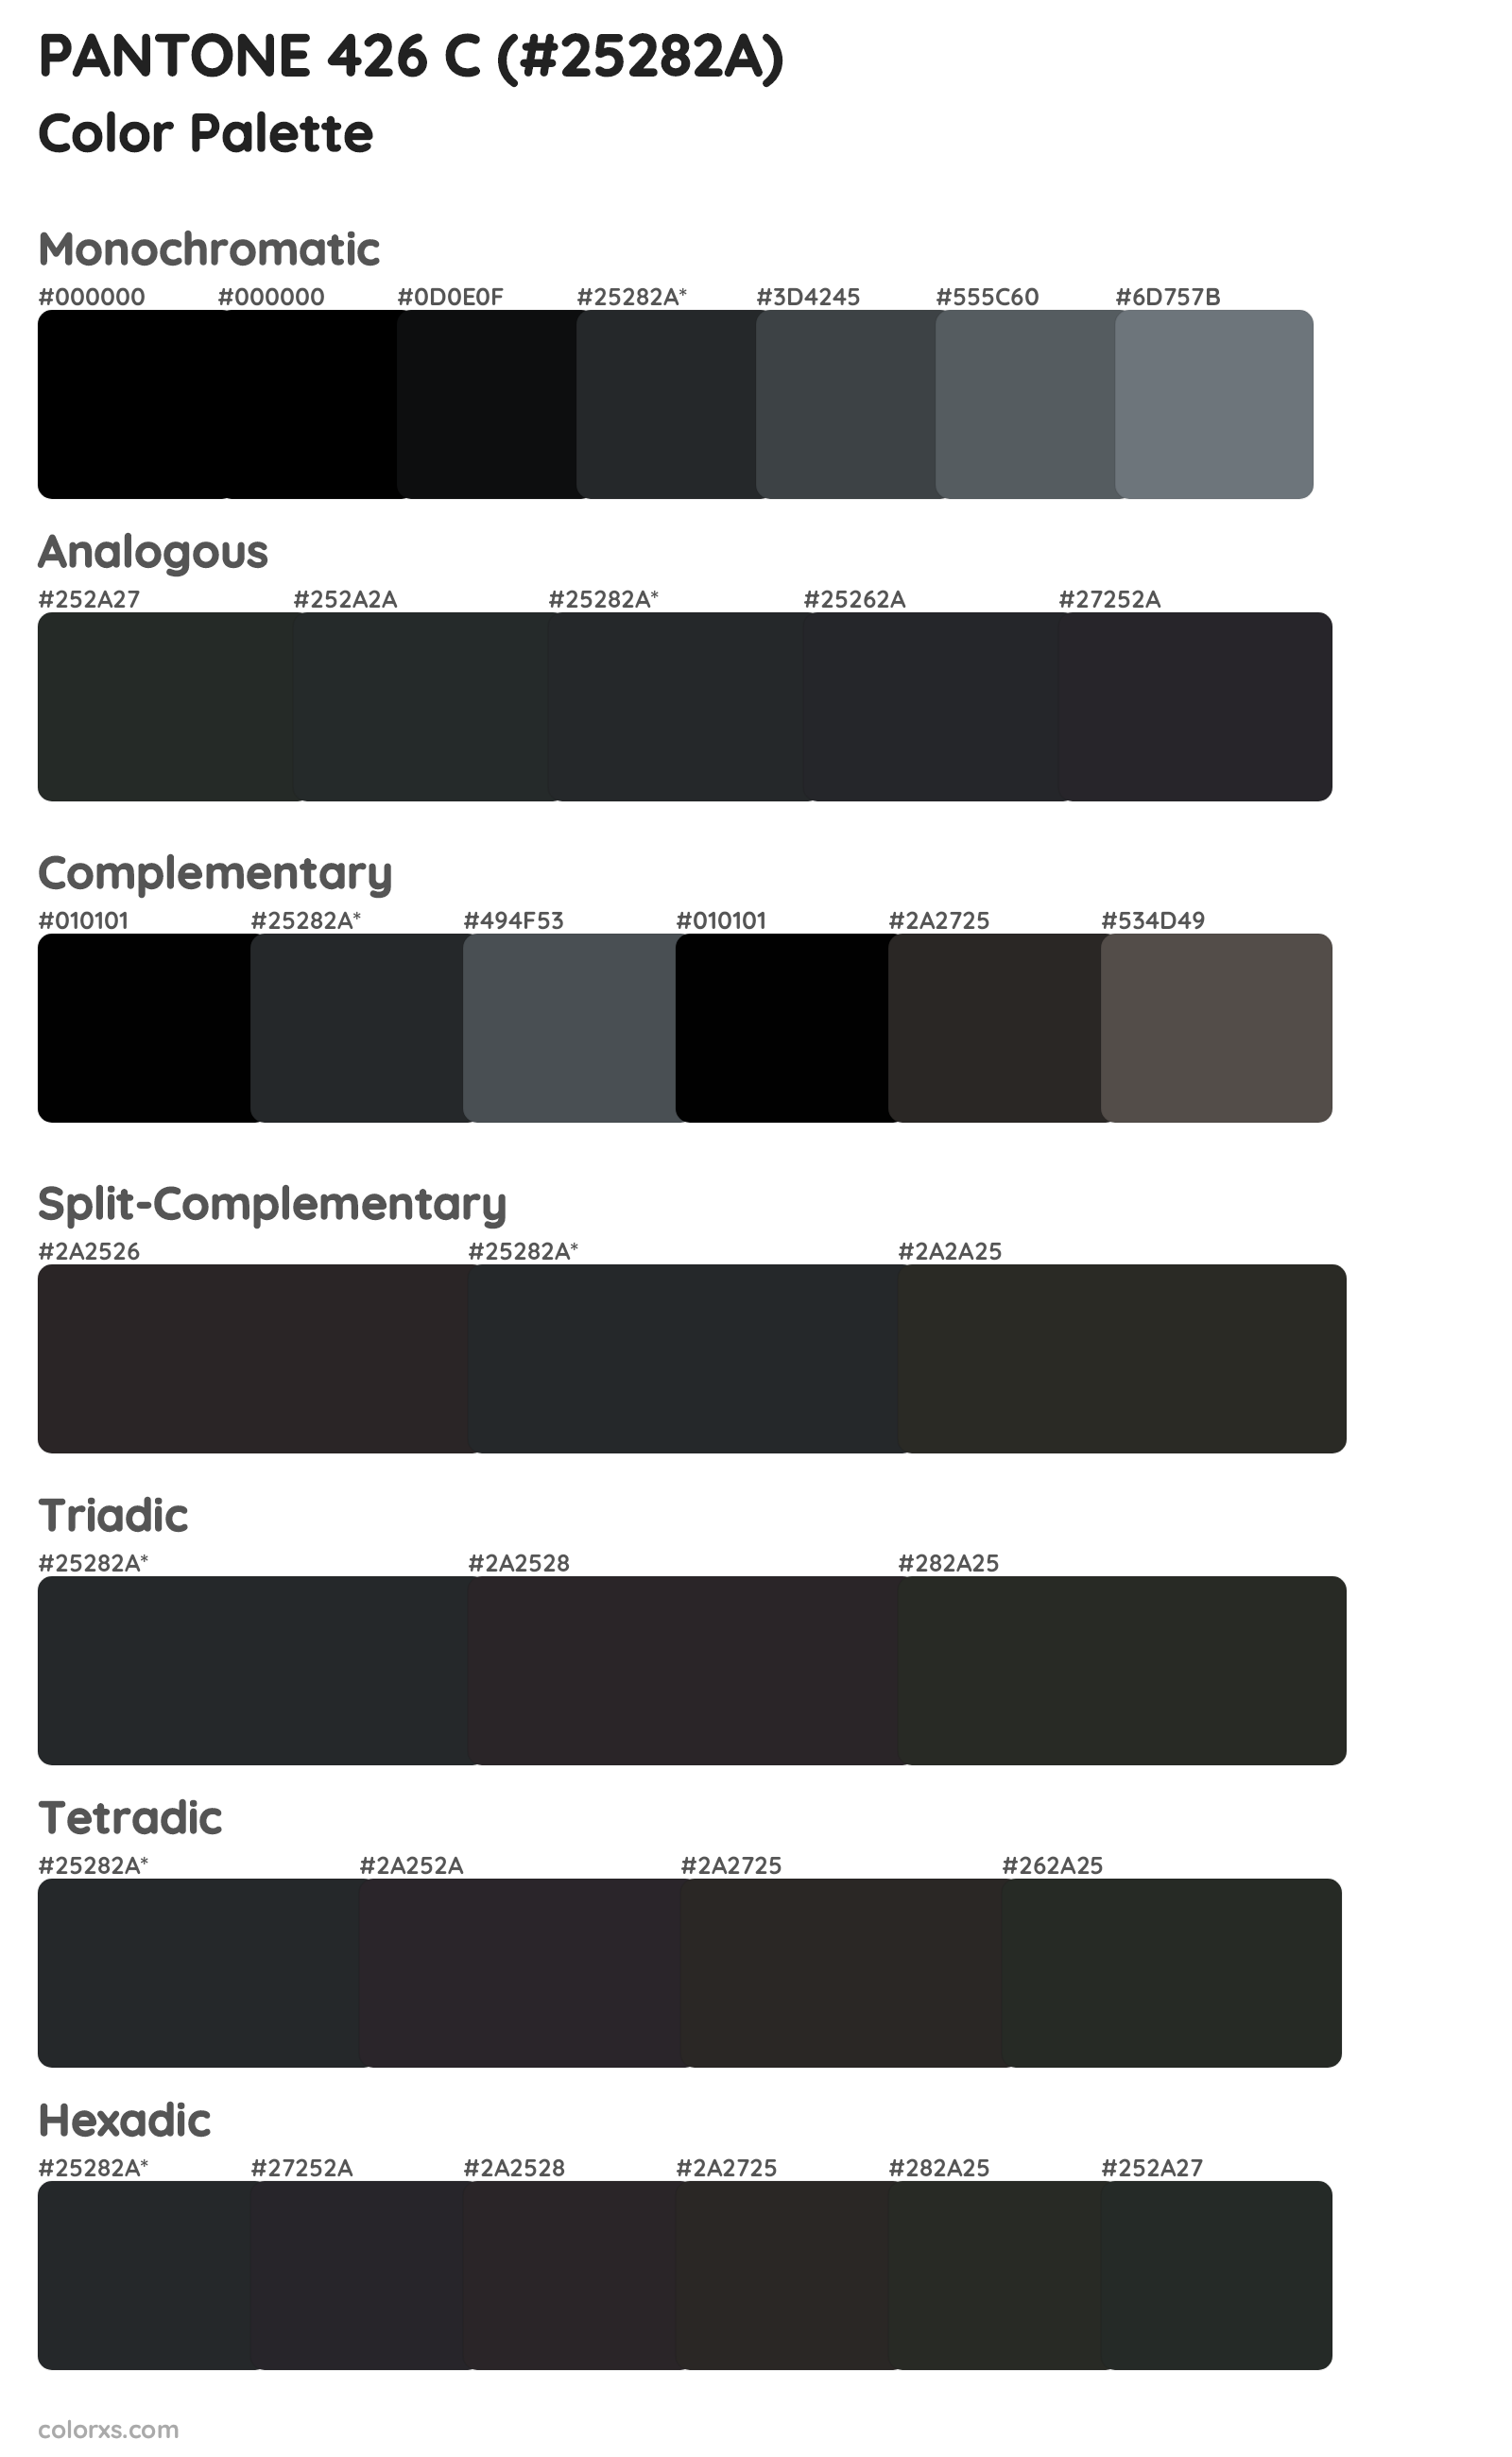 PANTONE 426 C Color Scheme Palettes